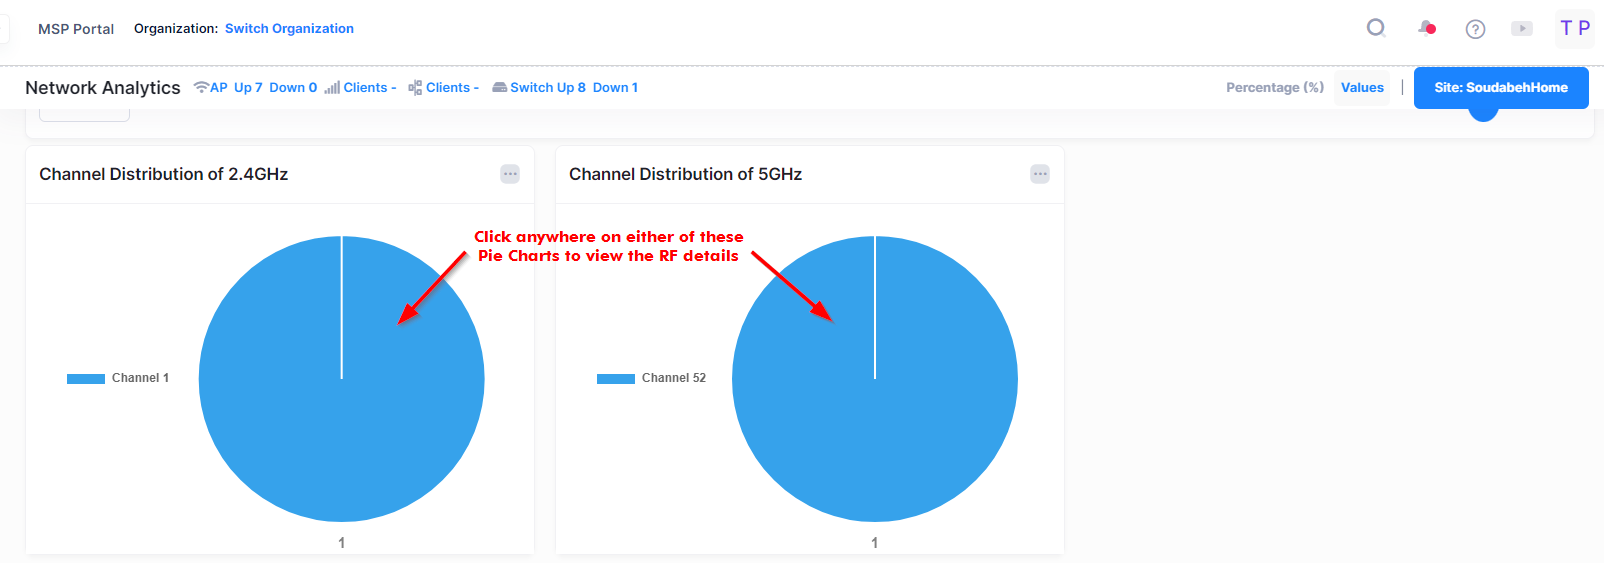 channel distribution pie chart-Network Analytics - OmniVista Cirrus 10.4.2-20240219-192537.png